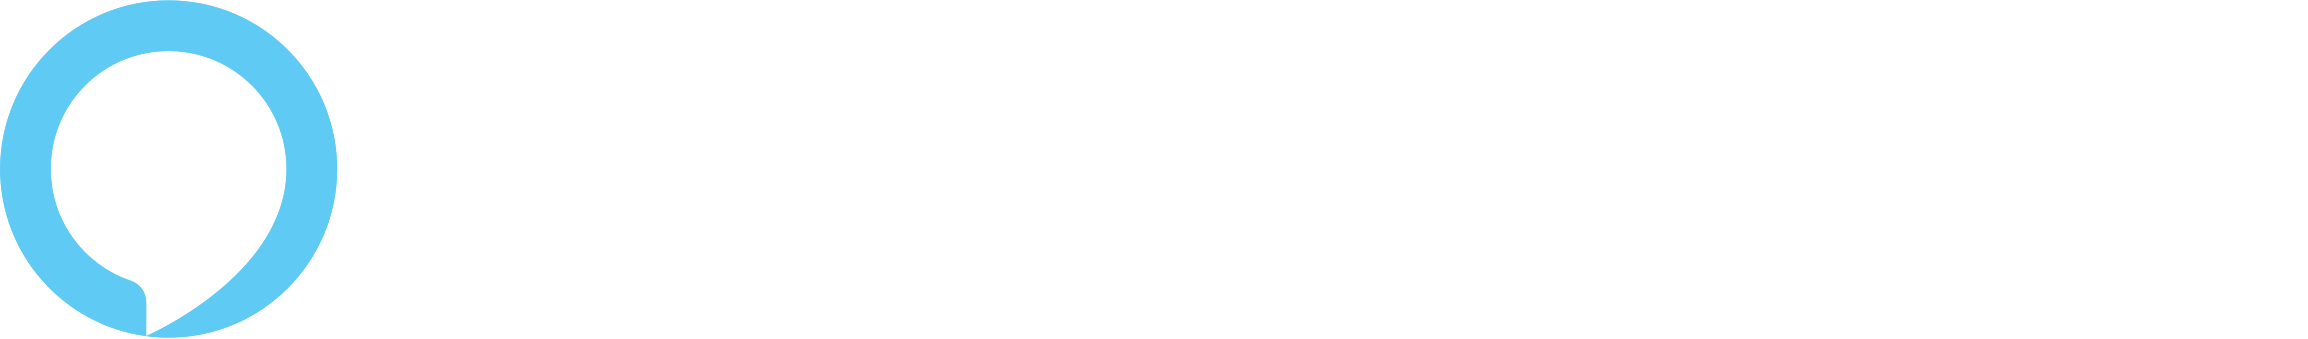 Palm Coast Amazon Alexa Skill